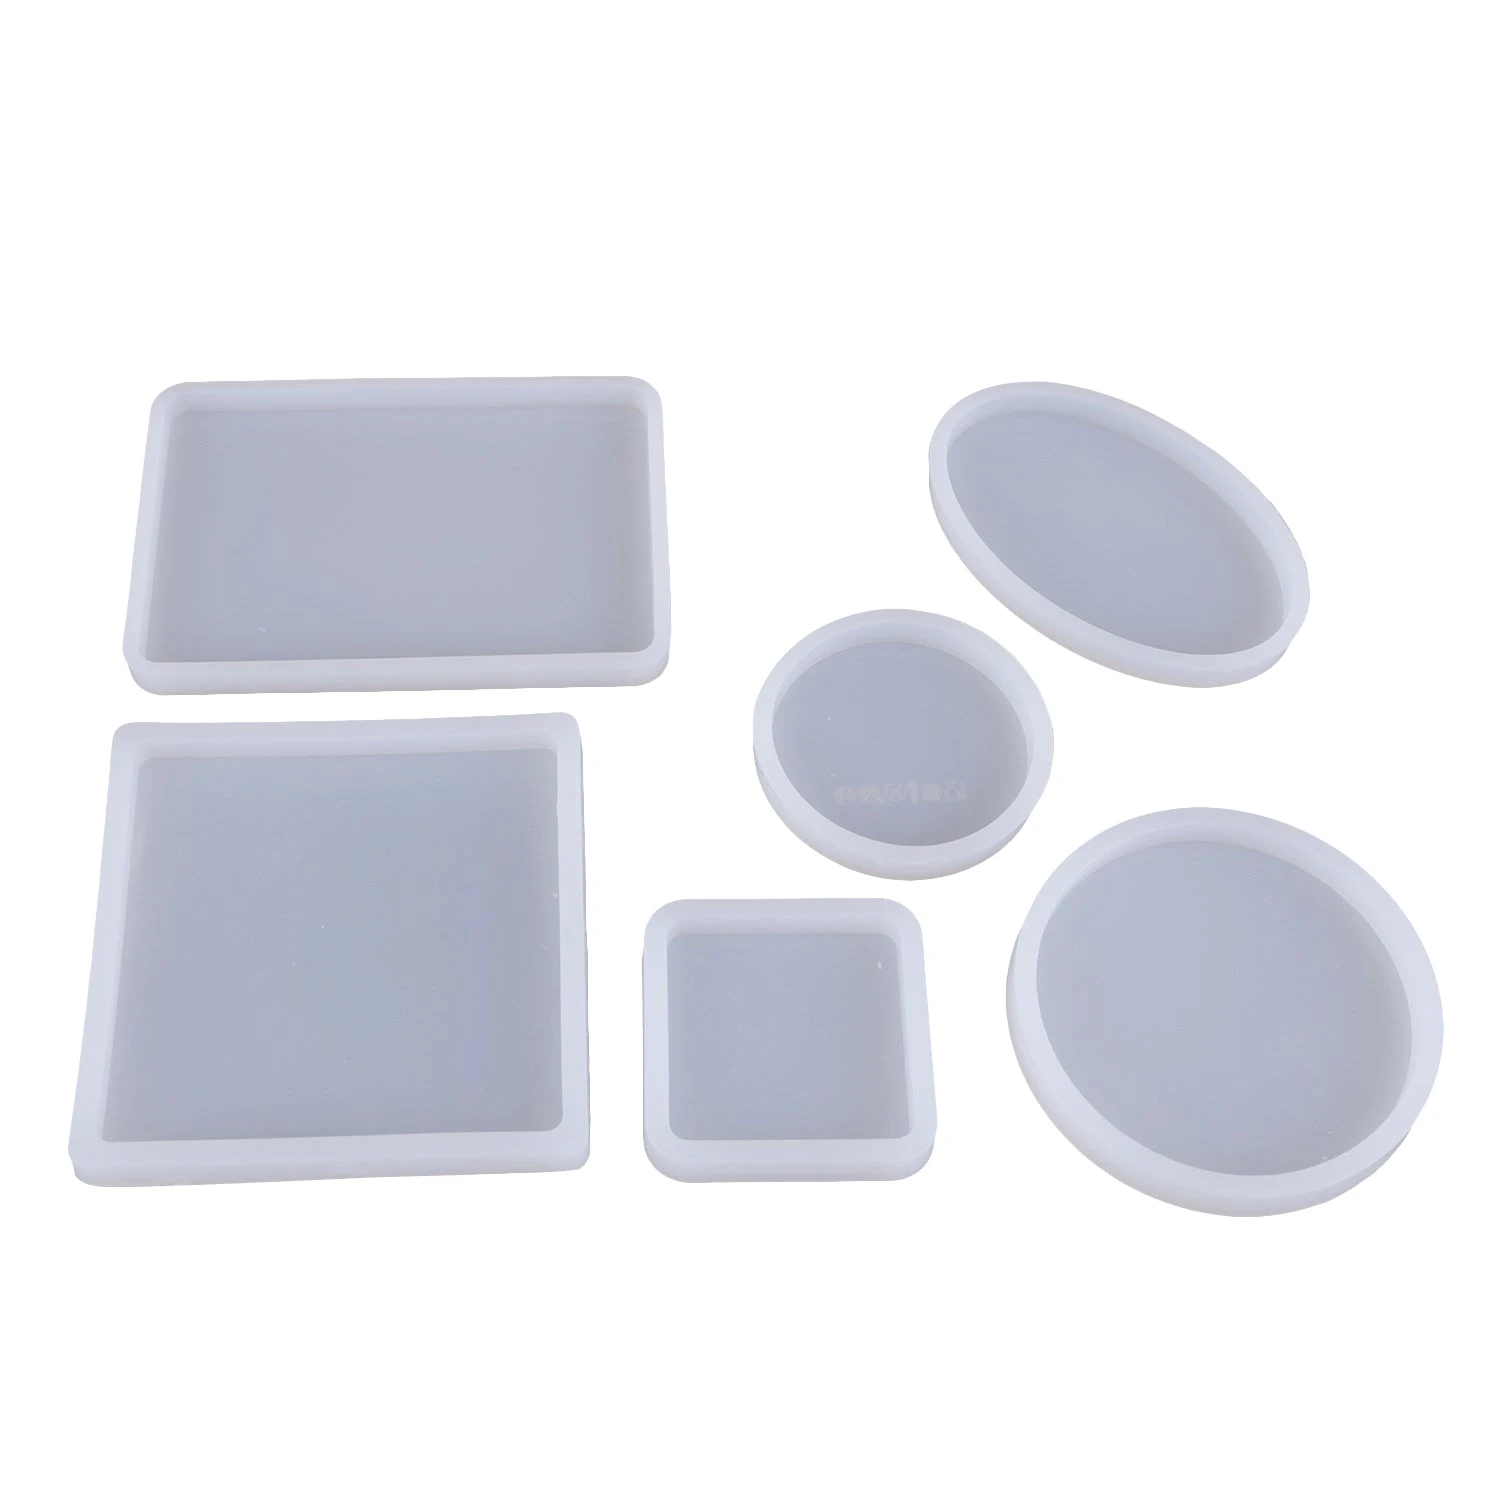 6 упак. формы, квадратные силиконовые ювелирные изделия литья формы Coaster для Создание украшений из каучука Diy Craft